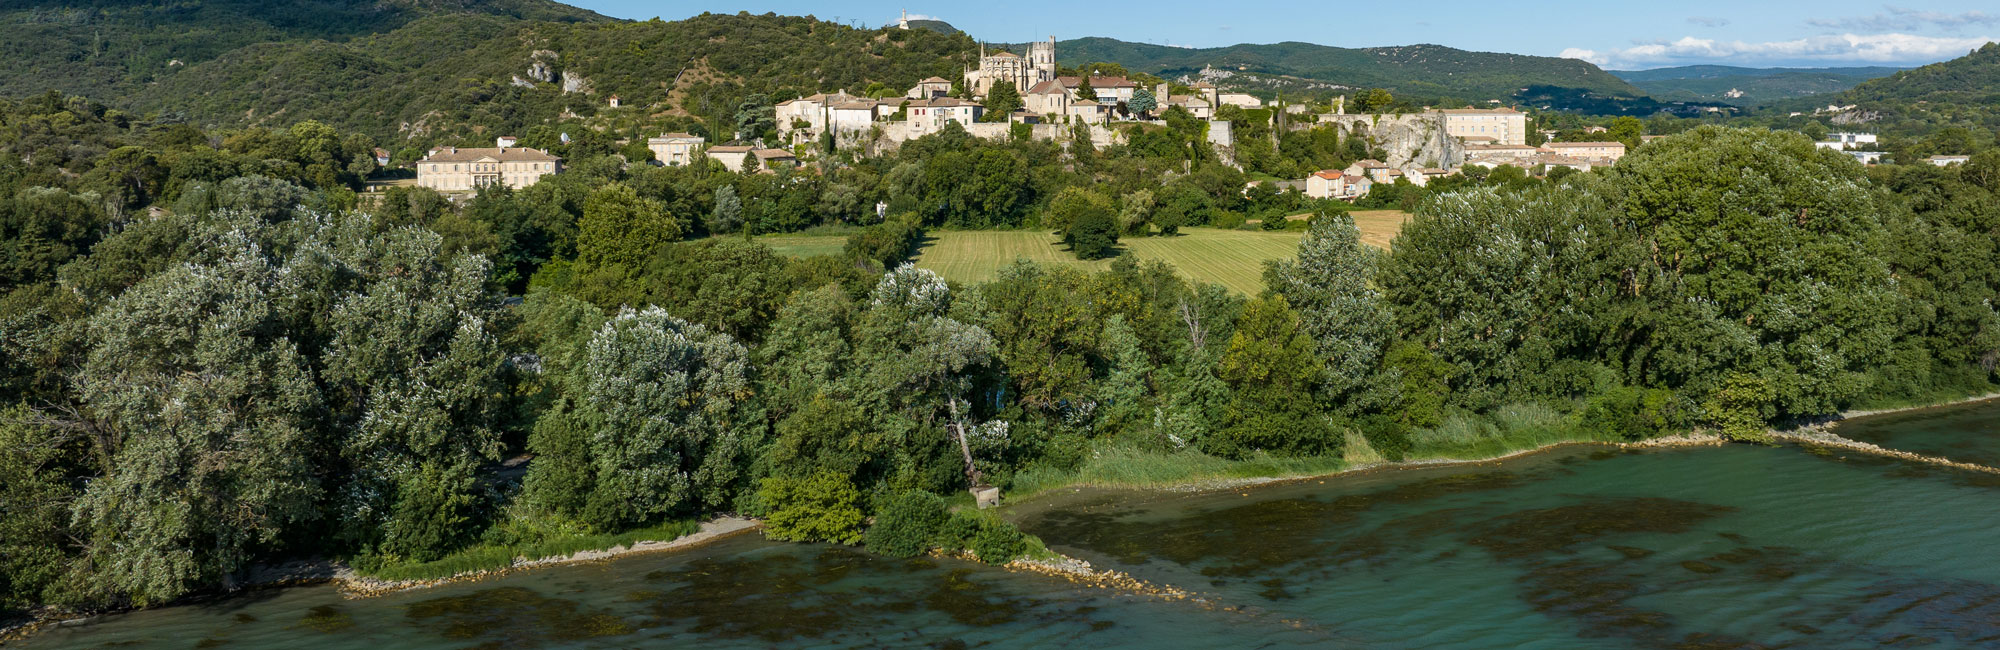 Viviers<br />
et le fleuve du Rhône